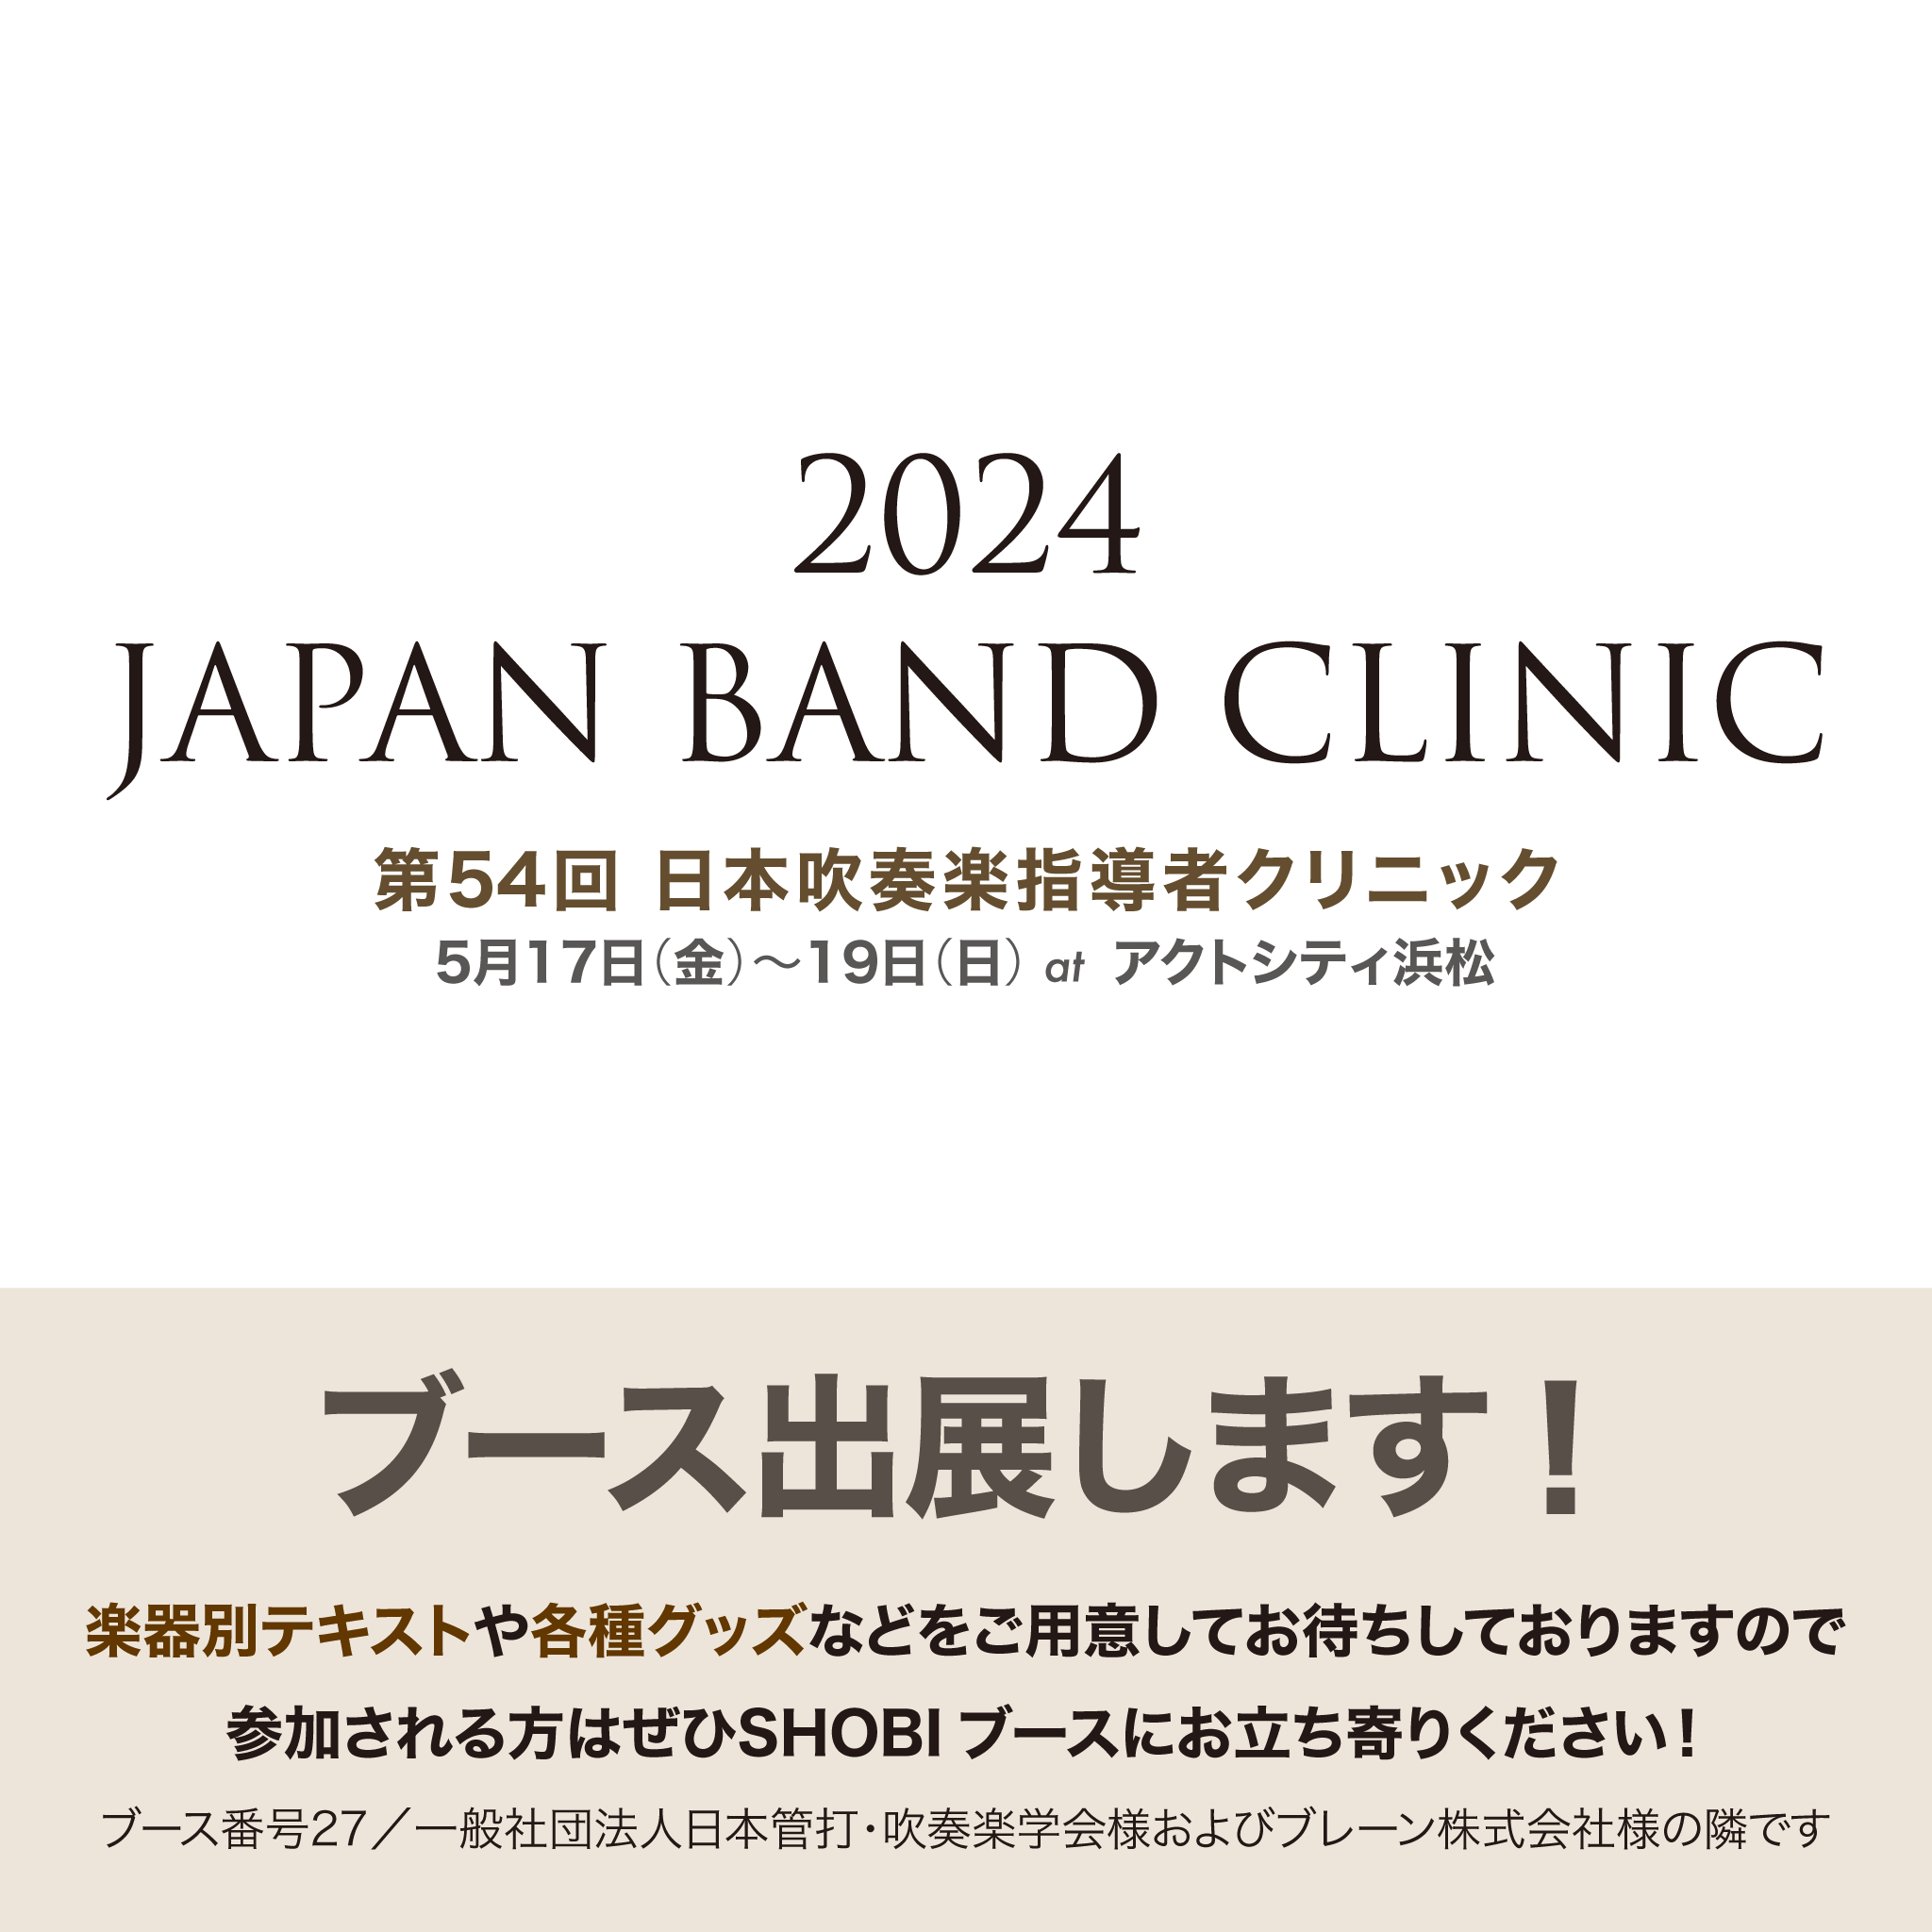 「第54回 日本吹奏楽指導者クリニック 2024 JAPAN BAND CLINIC」に、尚美ミュージックカレッジ専門学校のブースを出展します